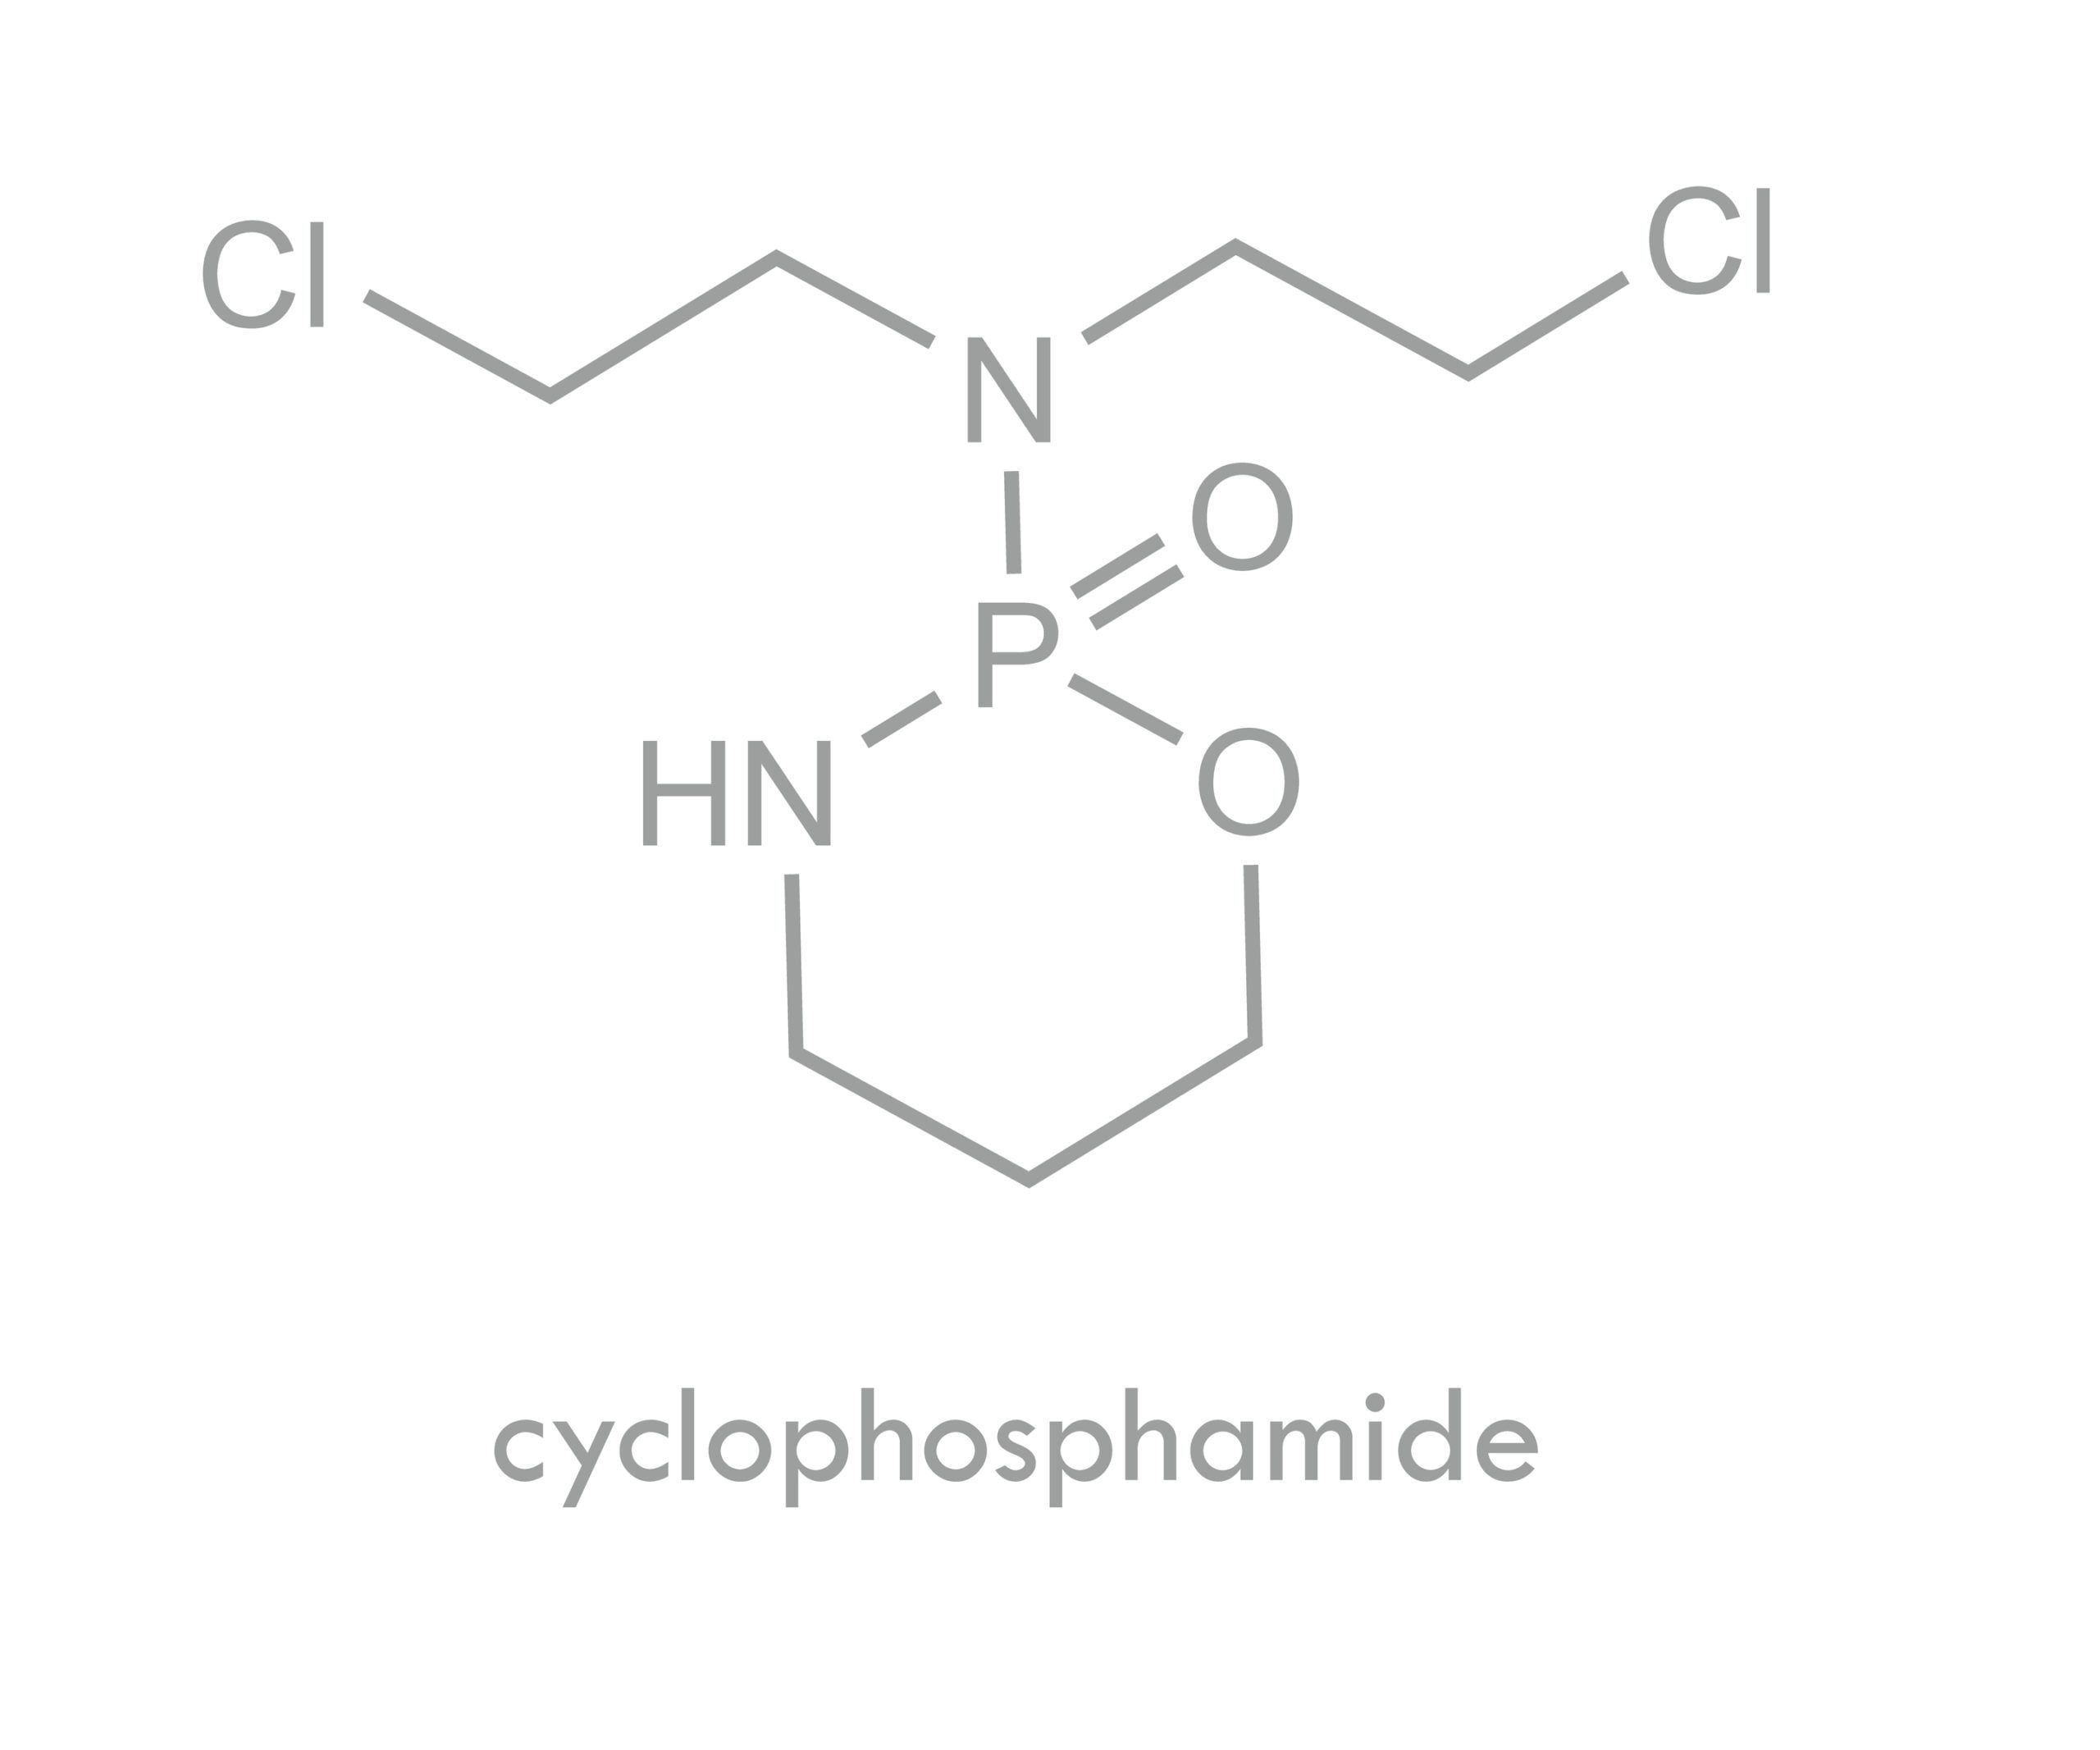 Exploring Dose De-Escalation of Post-Transplant Cyclophosphamide